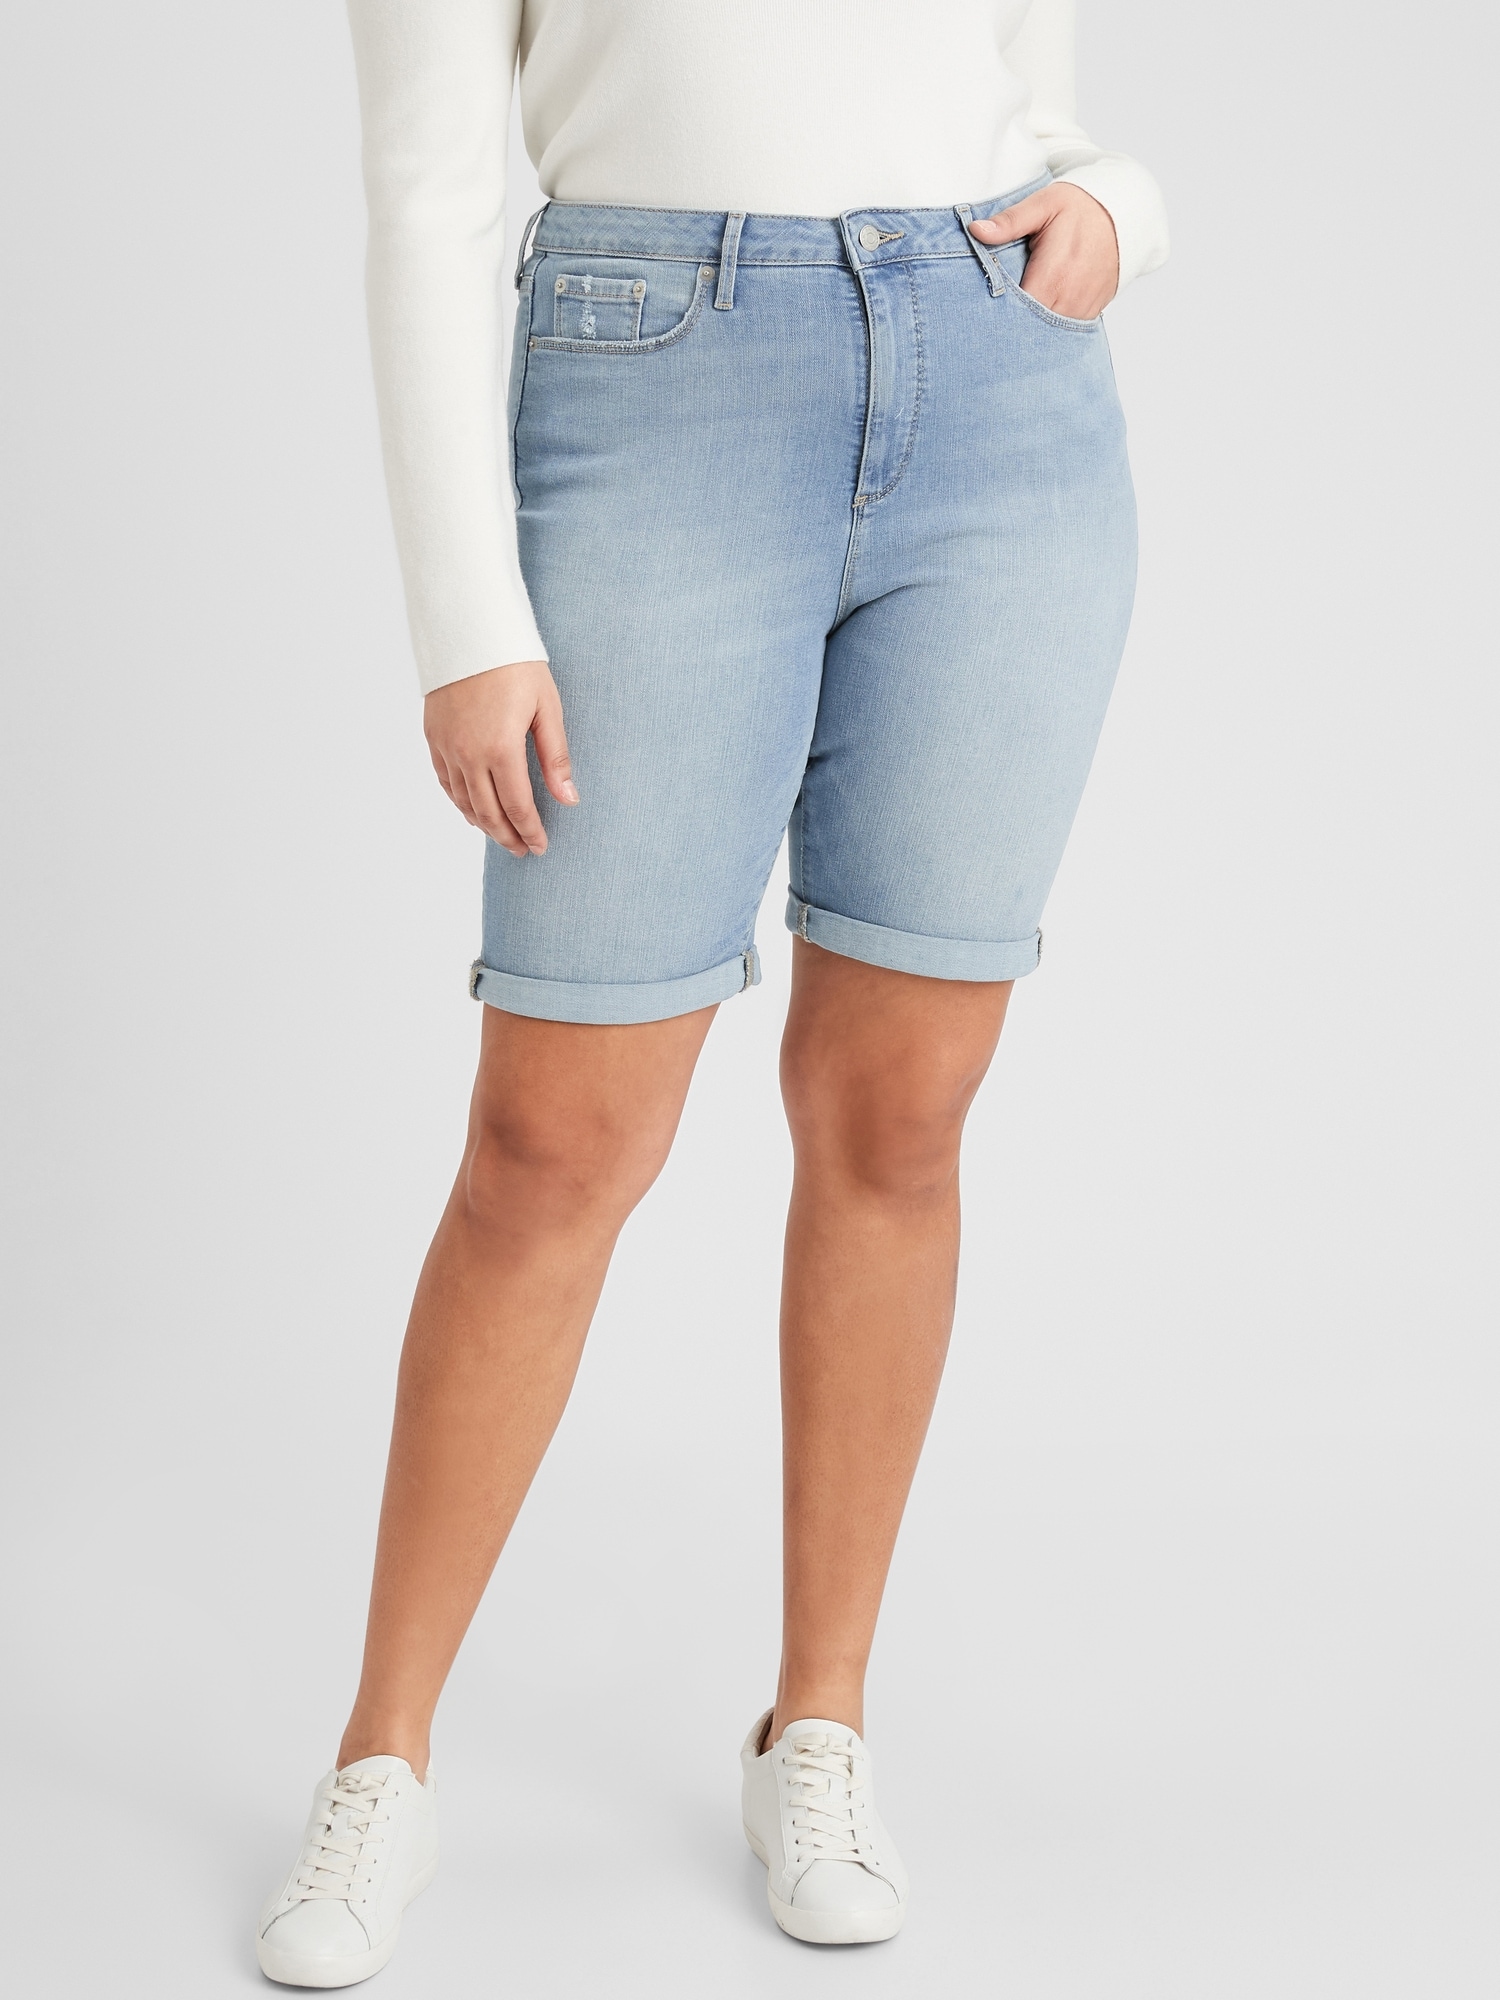 Curvy  High-Rise Light Wash Denim Shorts - 10 inch inseam